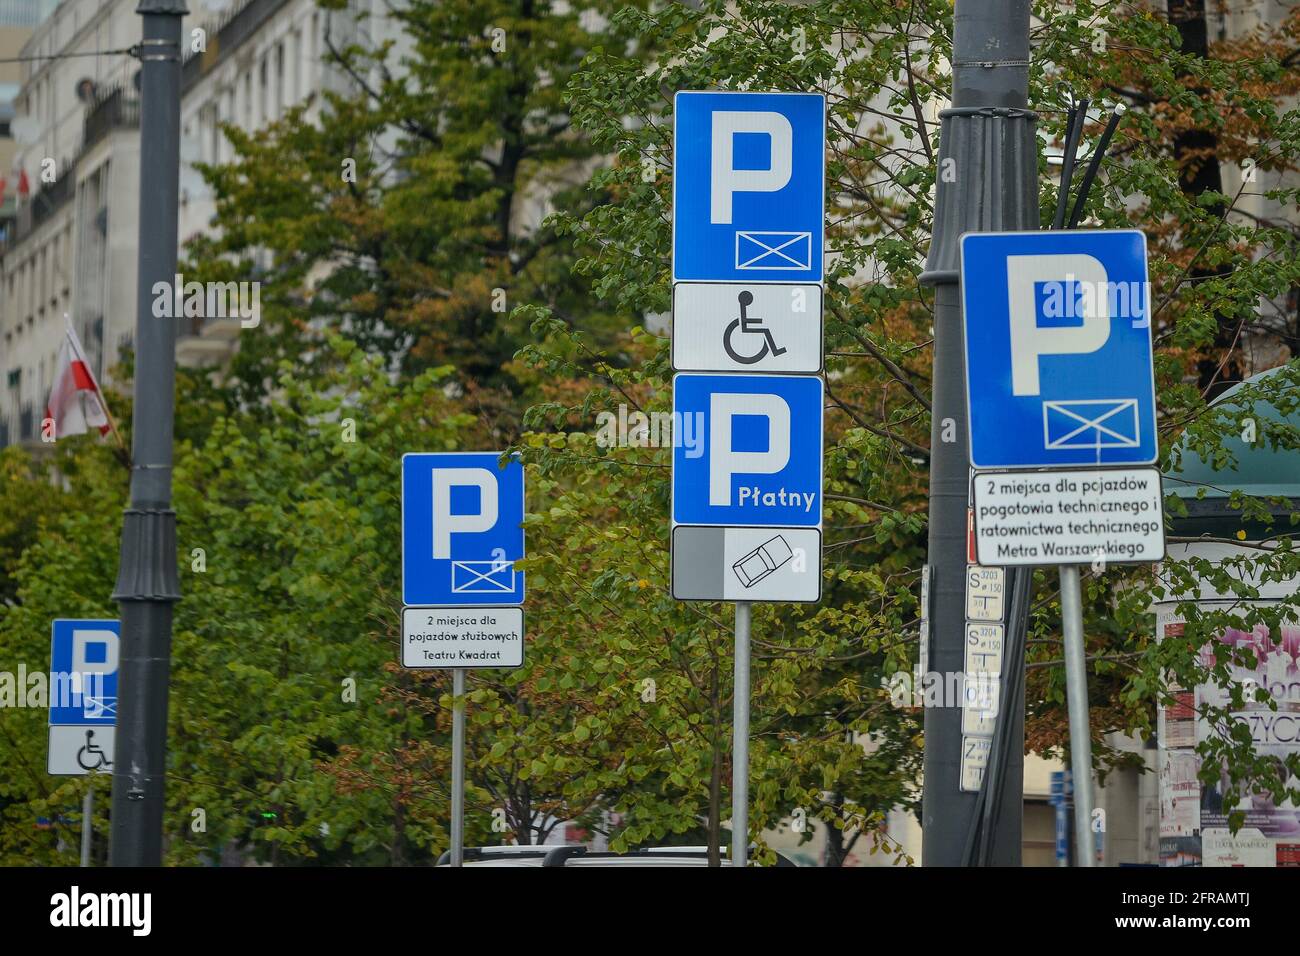 WARSCHAU. POLEN - AUGUST 2015: Straßenparkschilder, Parkplätze für Autos, Parkplätze für Behinderte. Vor dem Hintergrund von grünen Bäumen. Hochwertige Fotos Stockfoto